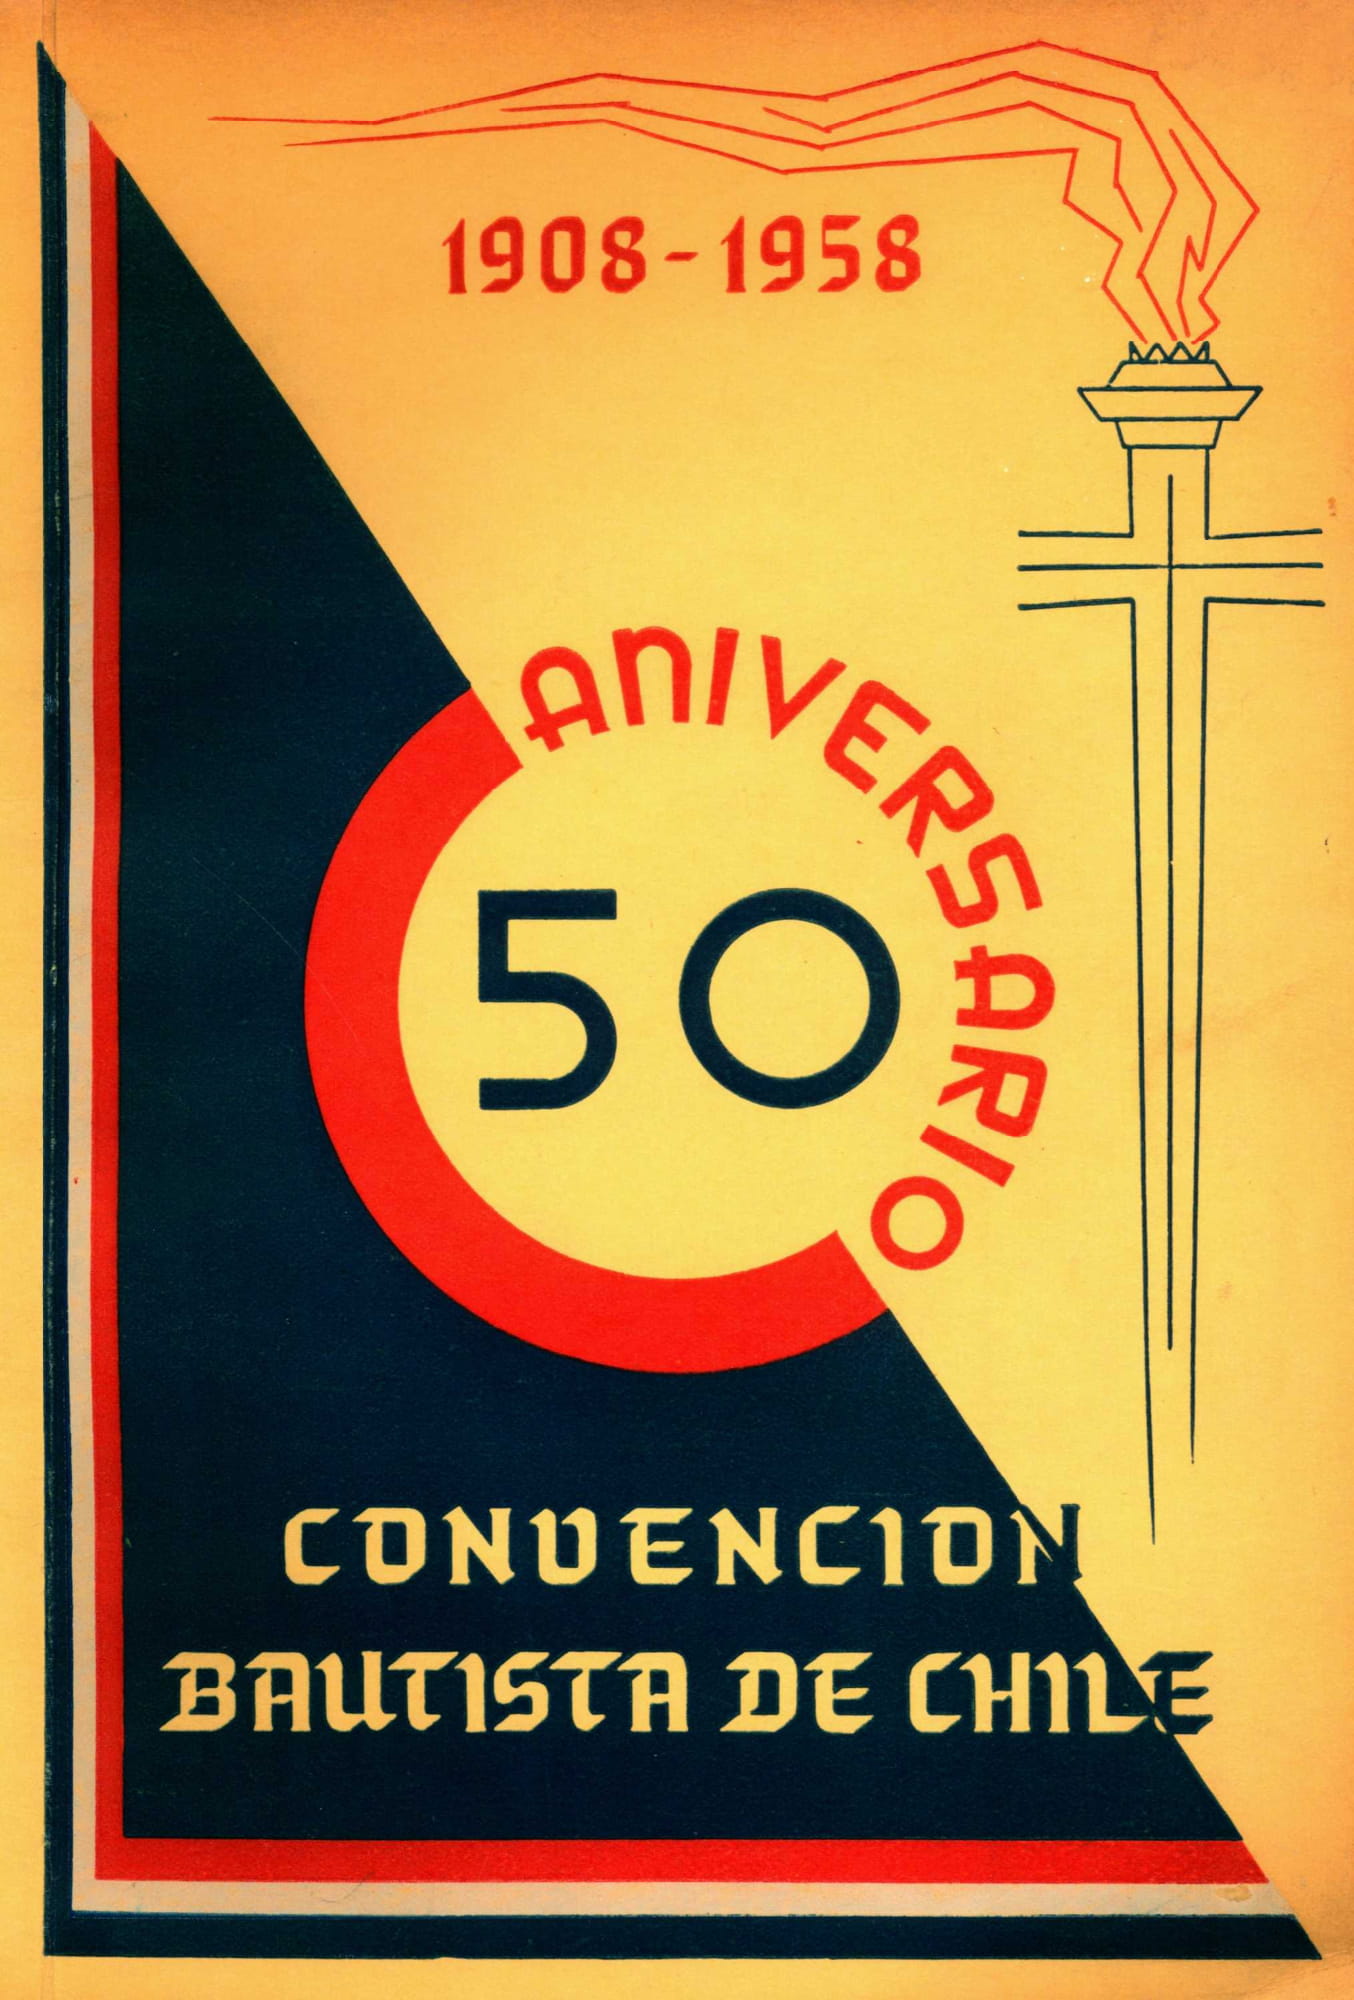 Convención de Chile aniversario 50 1908-1958-01.jpg